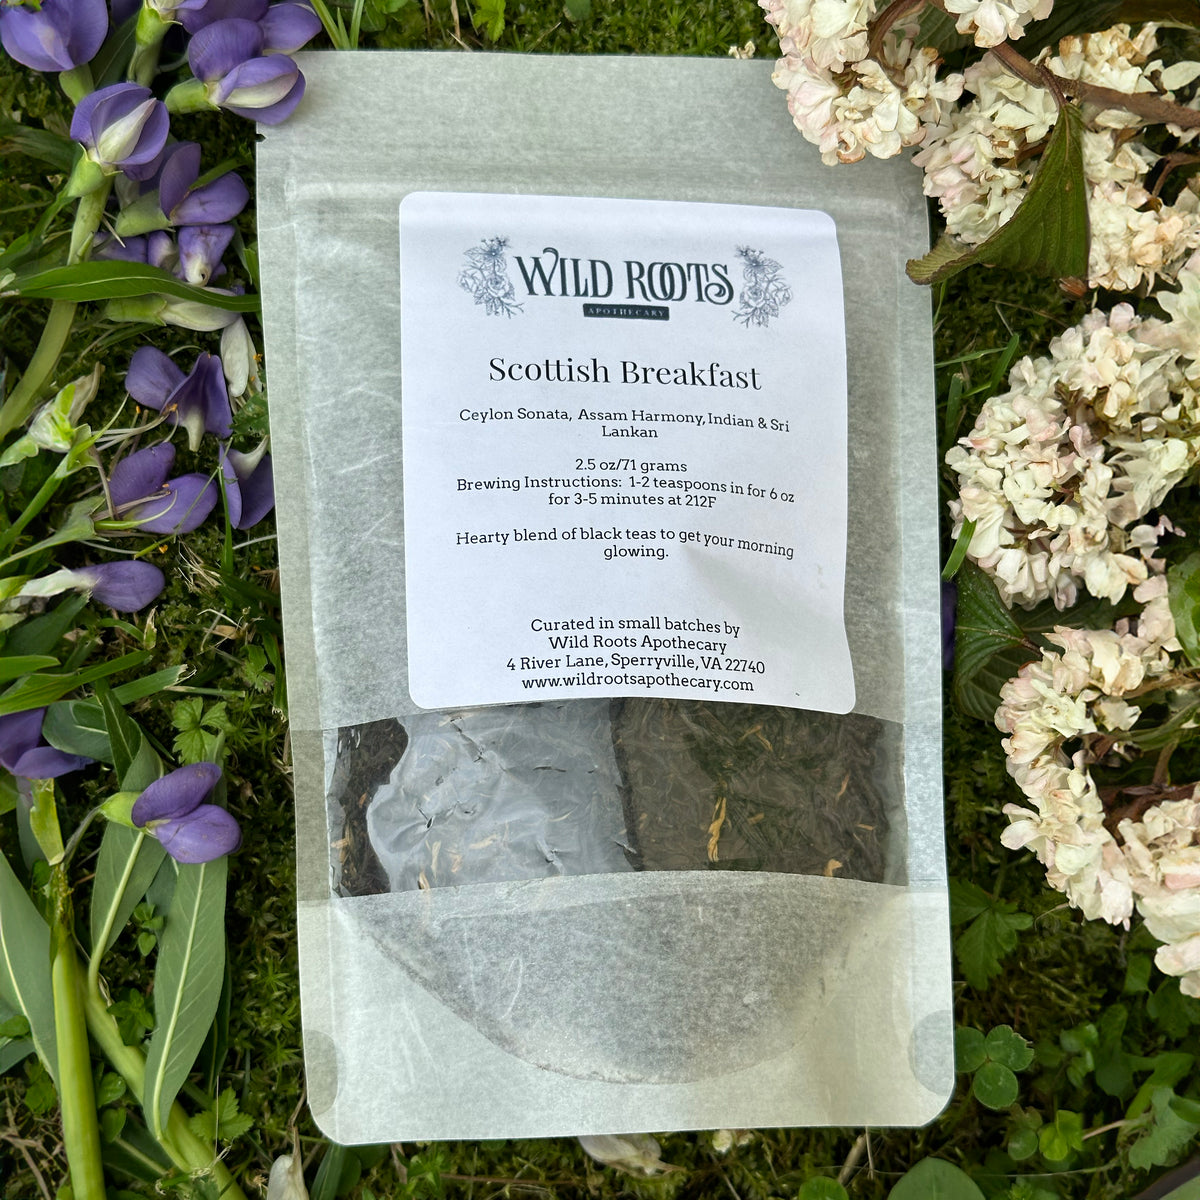 Scottish Breakfast—Wild Roots Apothecary